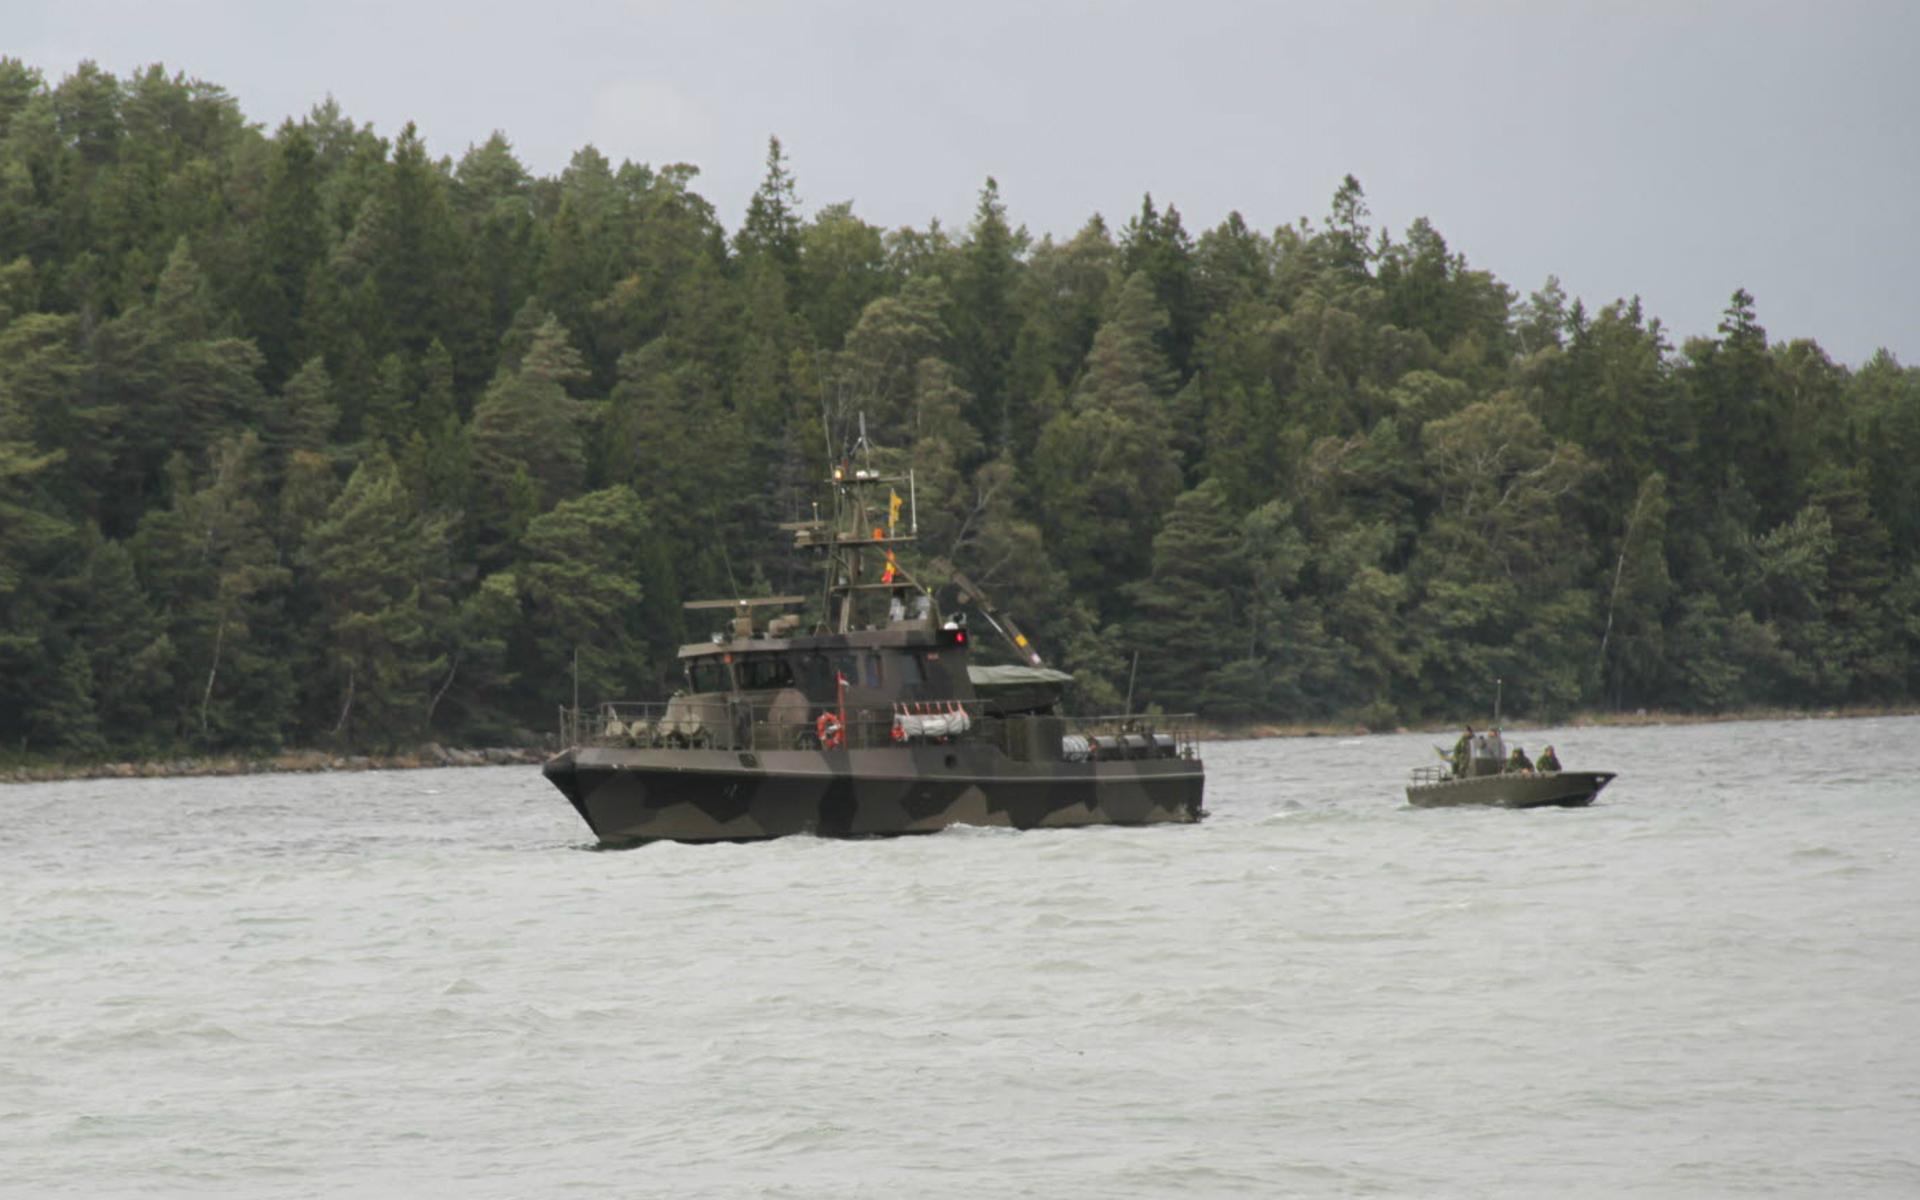 Bevakningsbåt typ 80, även kallad Tapperklass, används bland annat av bevakningsbåtkompaniet i Göteborg. Förutom radar och sonar är båtarna bestyckade med sjunkbomber för ubåtsjakt. Därutöver finns också två tunga 12,7 mm kulsprutor (Ksp 88). Varje båt har också en undervattensfarkost med videokamera.